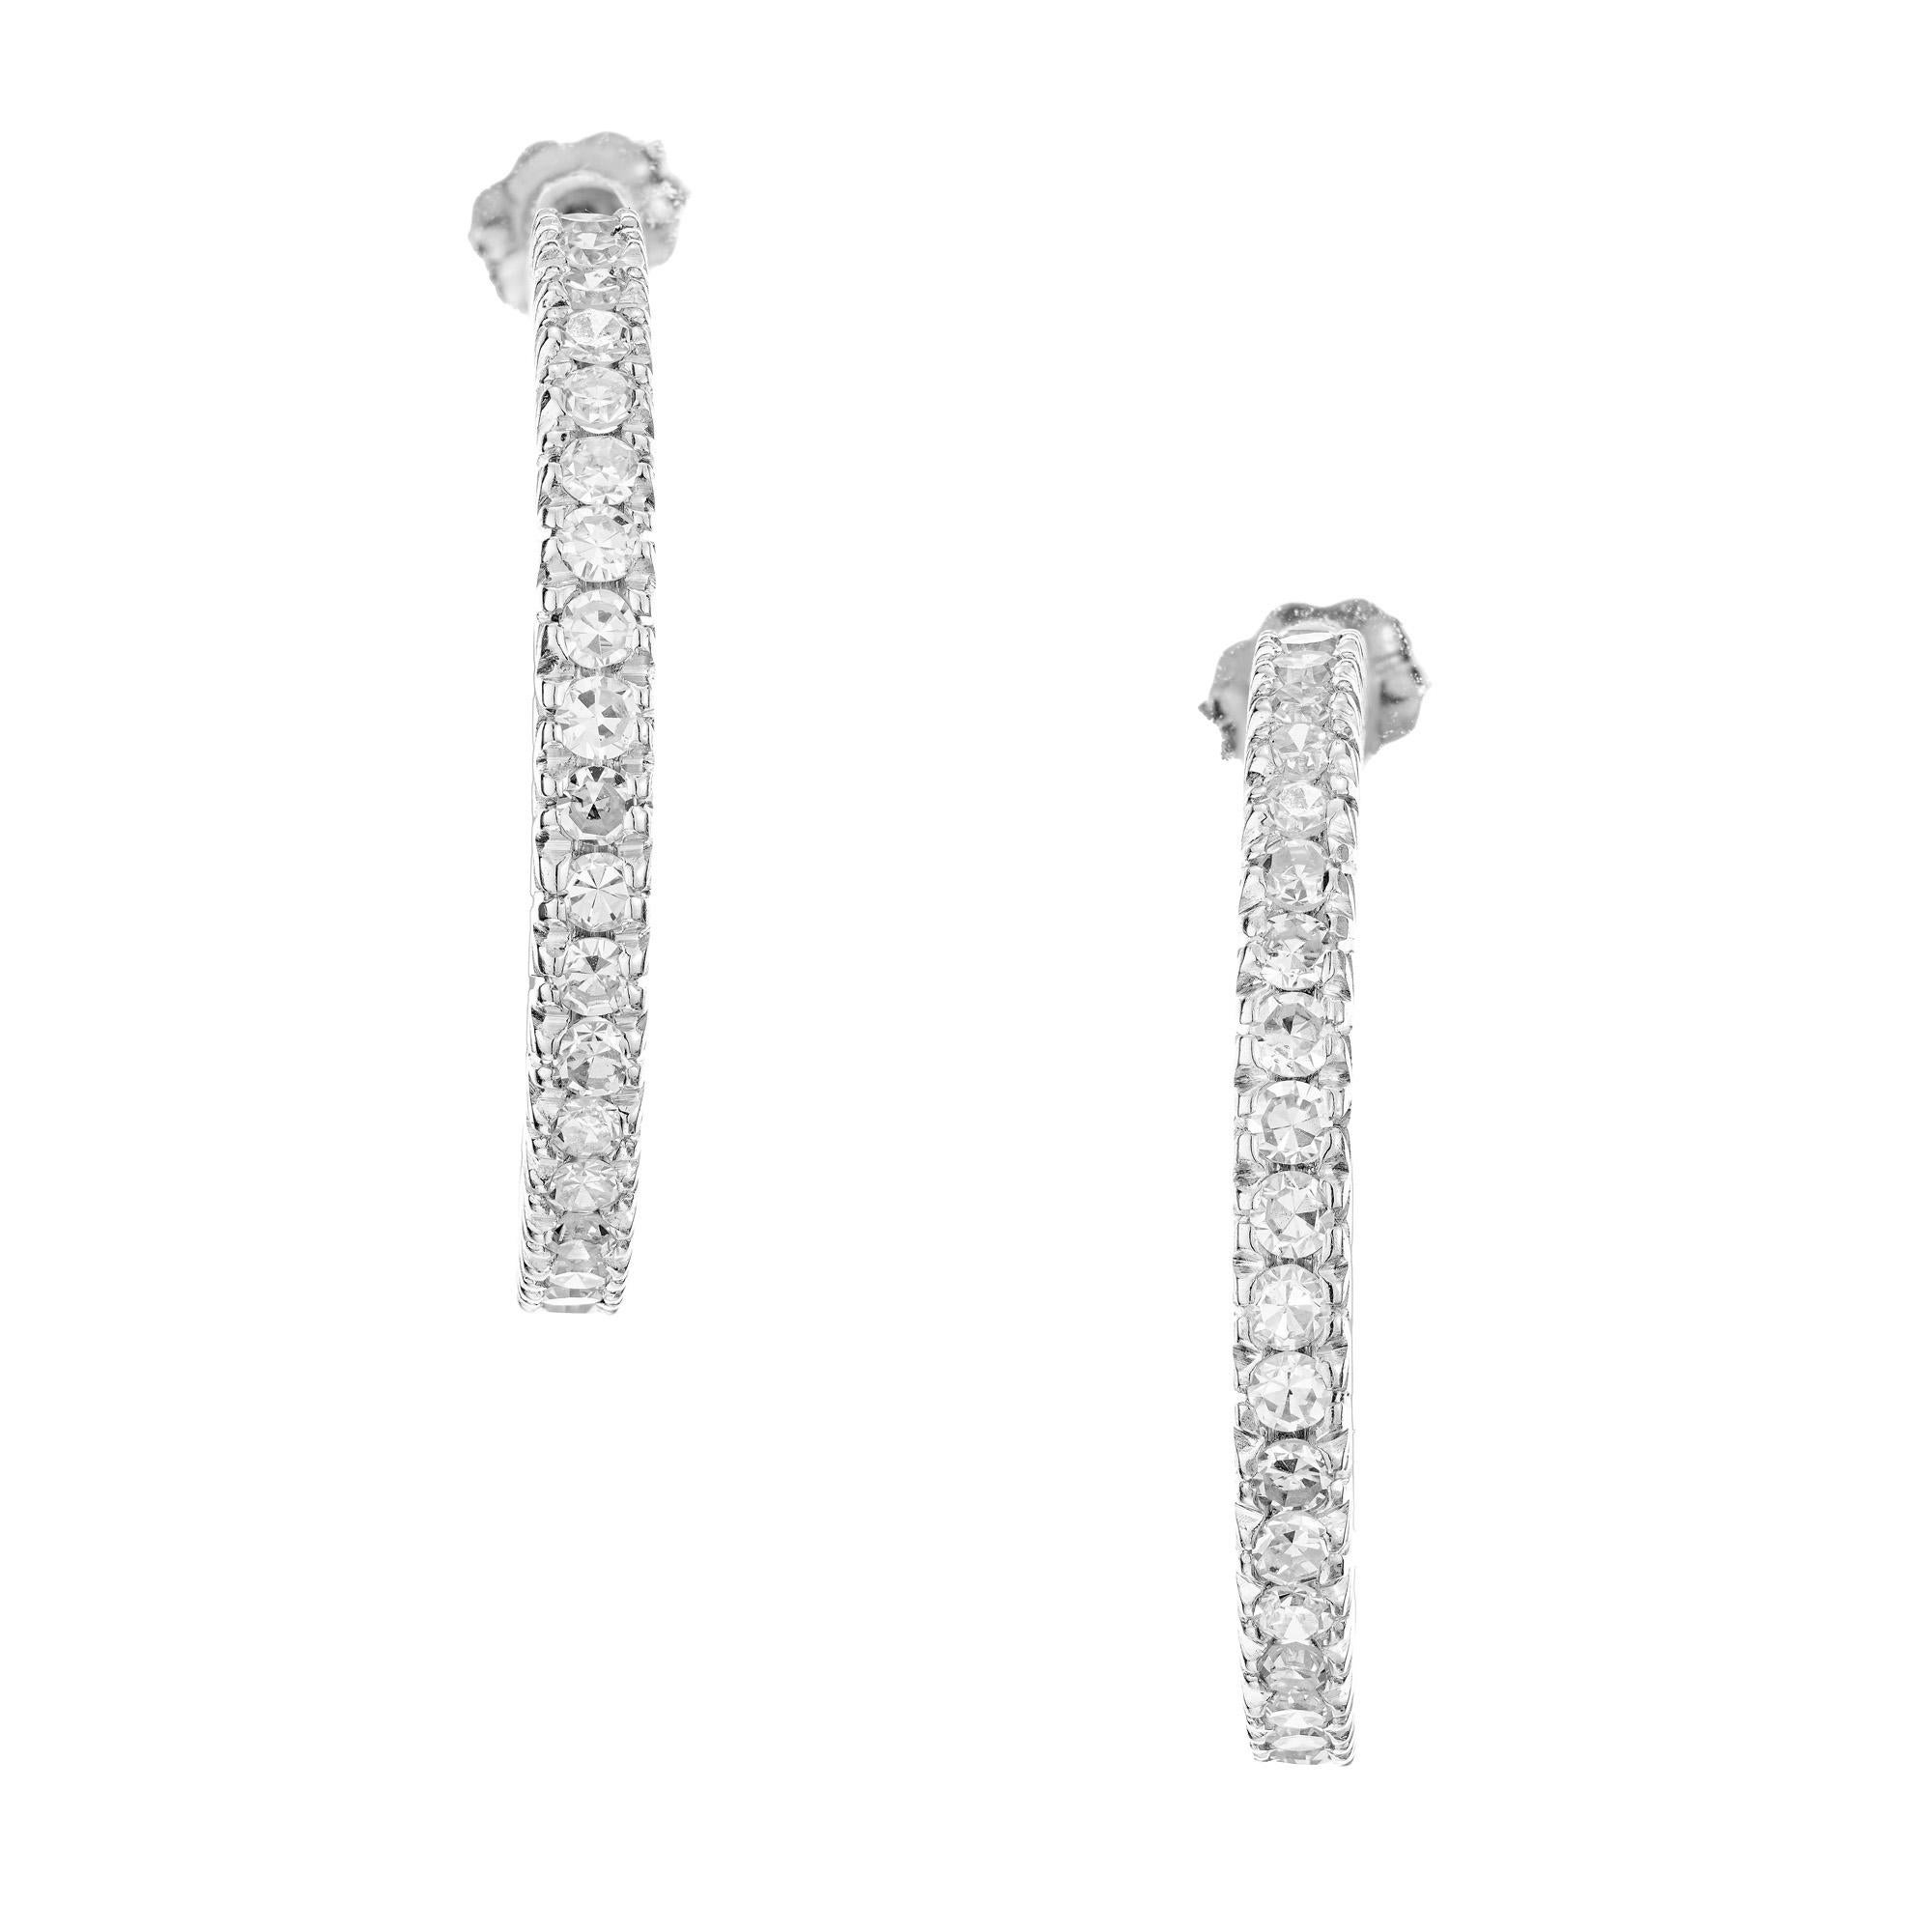 Boucles d'oreilles en diamant et platine des années 1960. Chaque anneau est incrusté de 31 diamants brillants de taille ronde, totalisant 1,50 carat, créant un éclat éblouissant. La monture en platine ajoute une touche d'élégance et de durabilité à